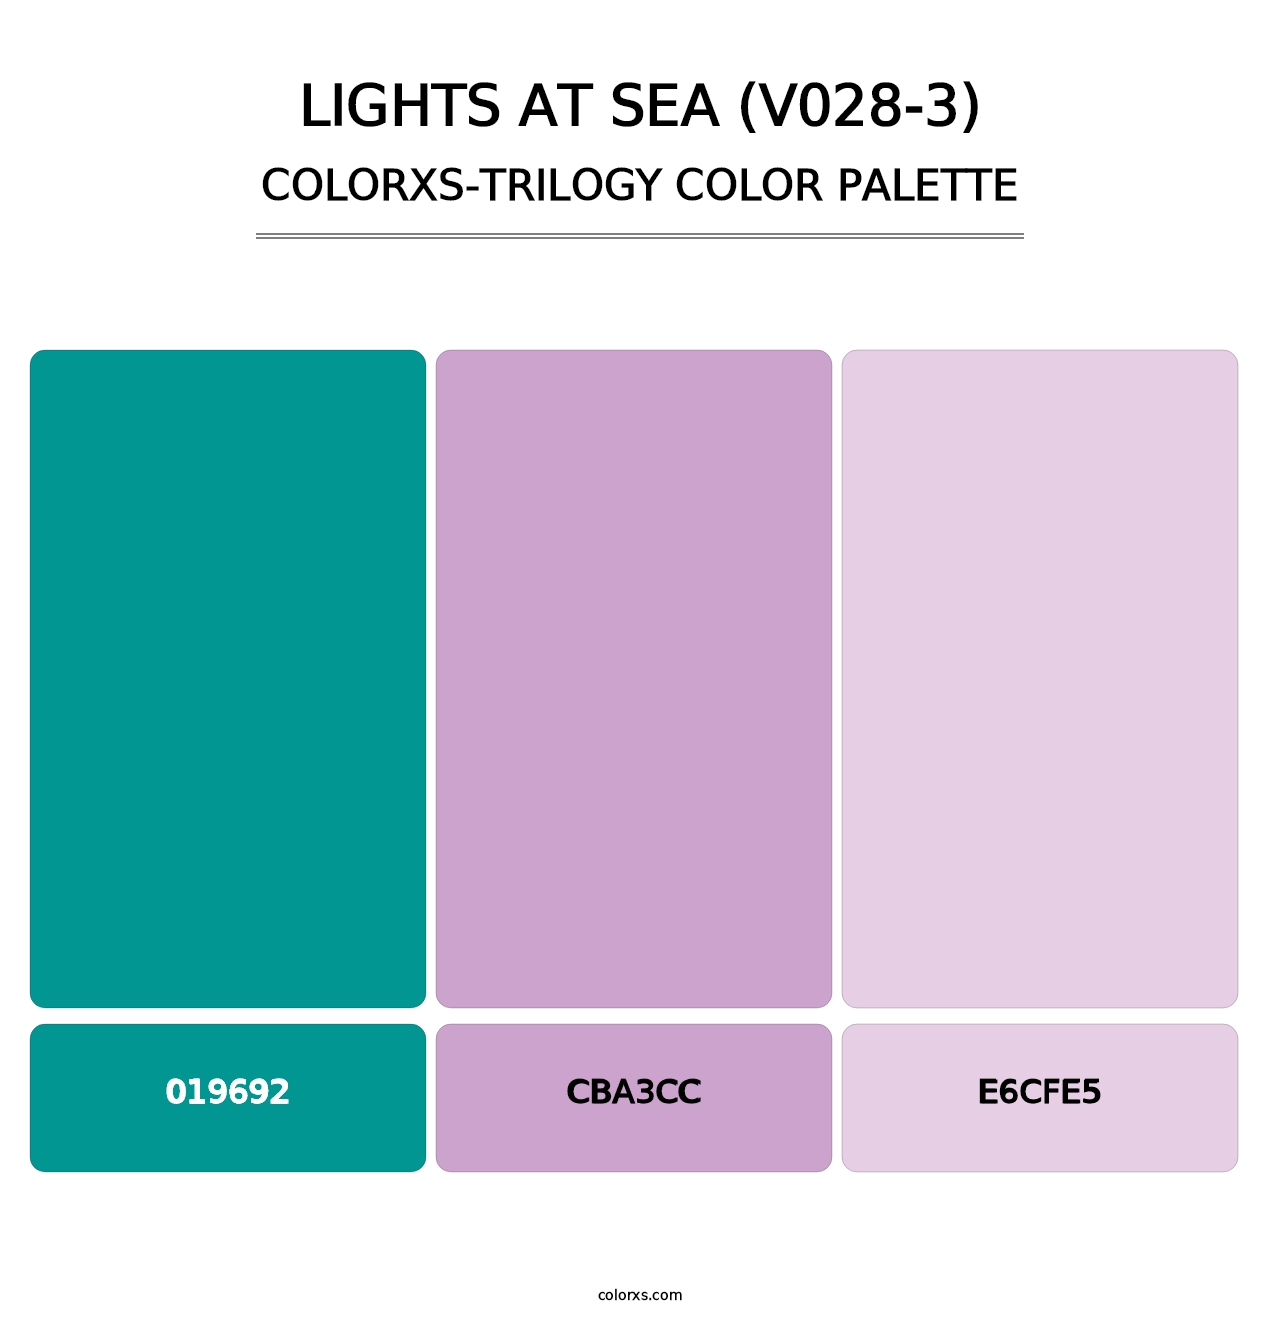 Lights at Sea (V028-3) - Colorxs Trilogy Palette